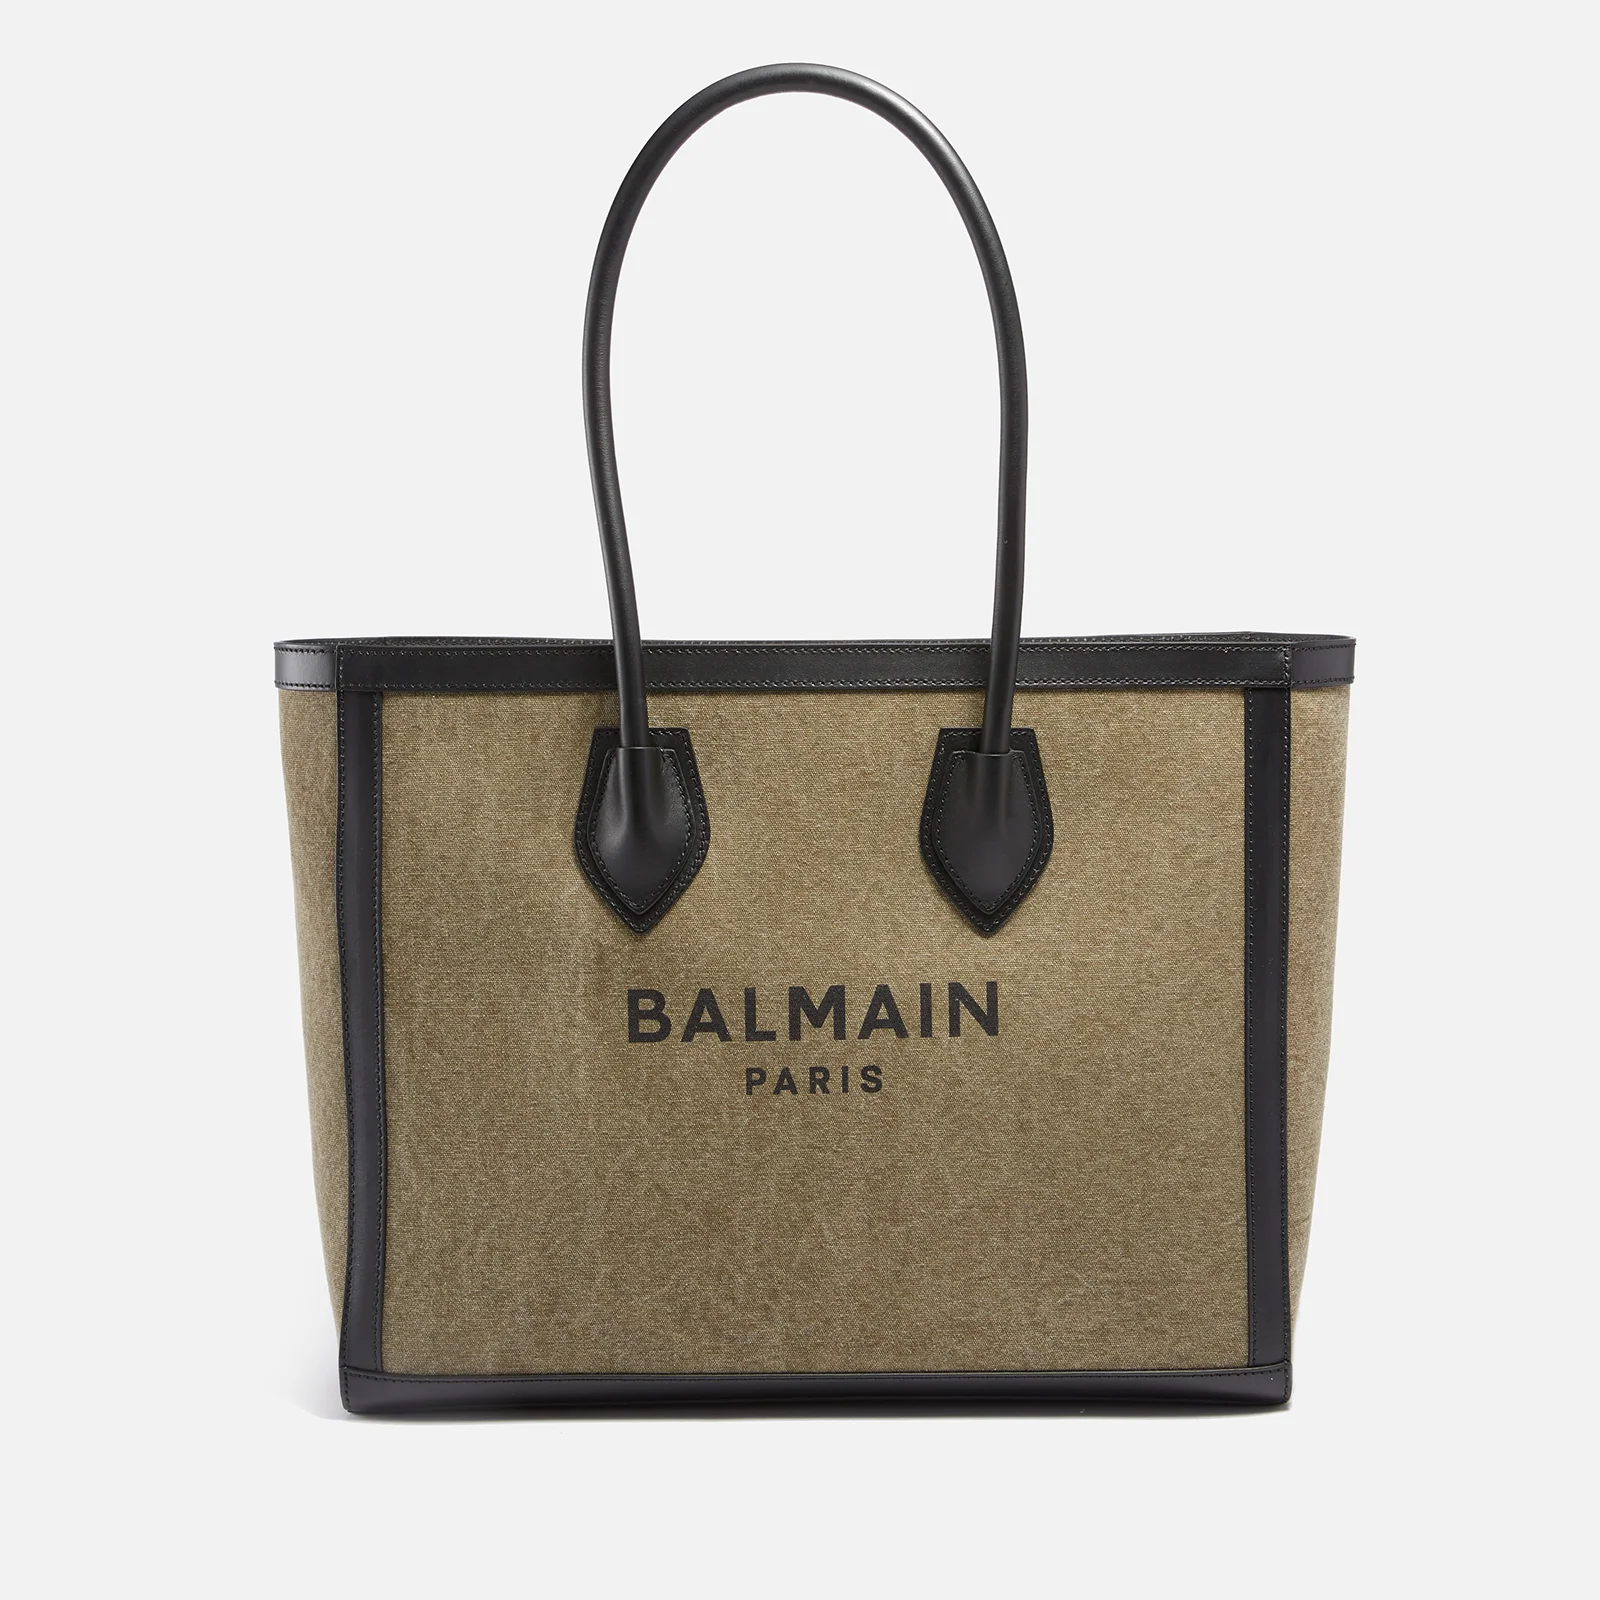 Balmain Women's B-Army Canvas & Logo Shopper 42 Bag - Khaki/Black Image 1